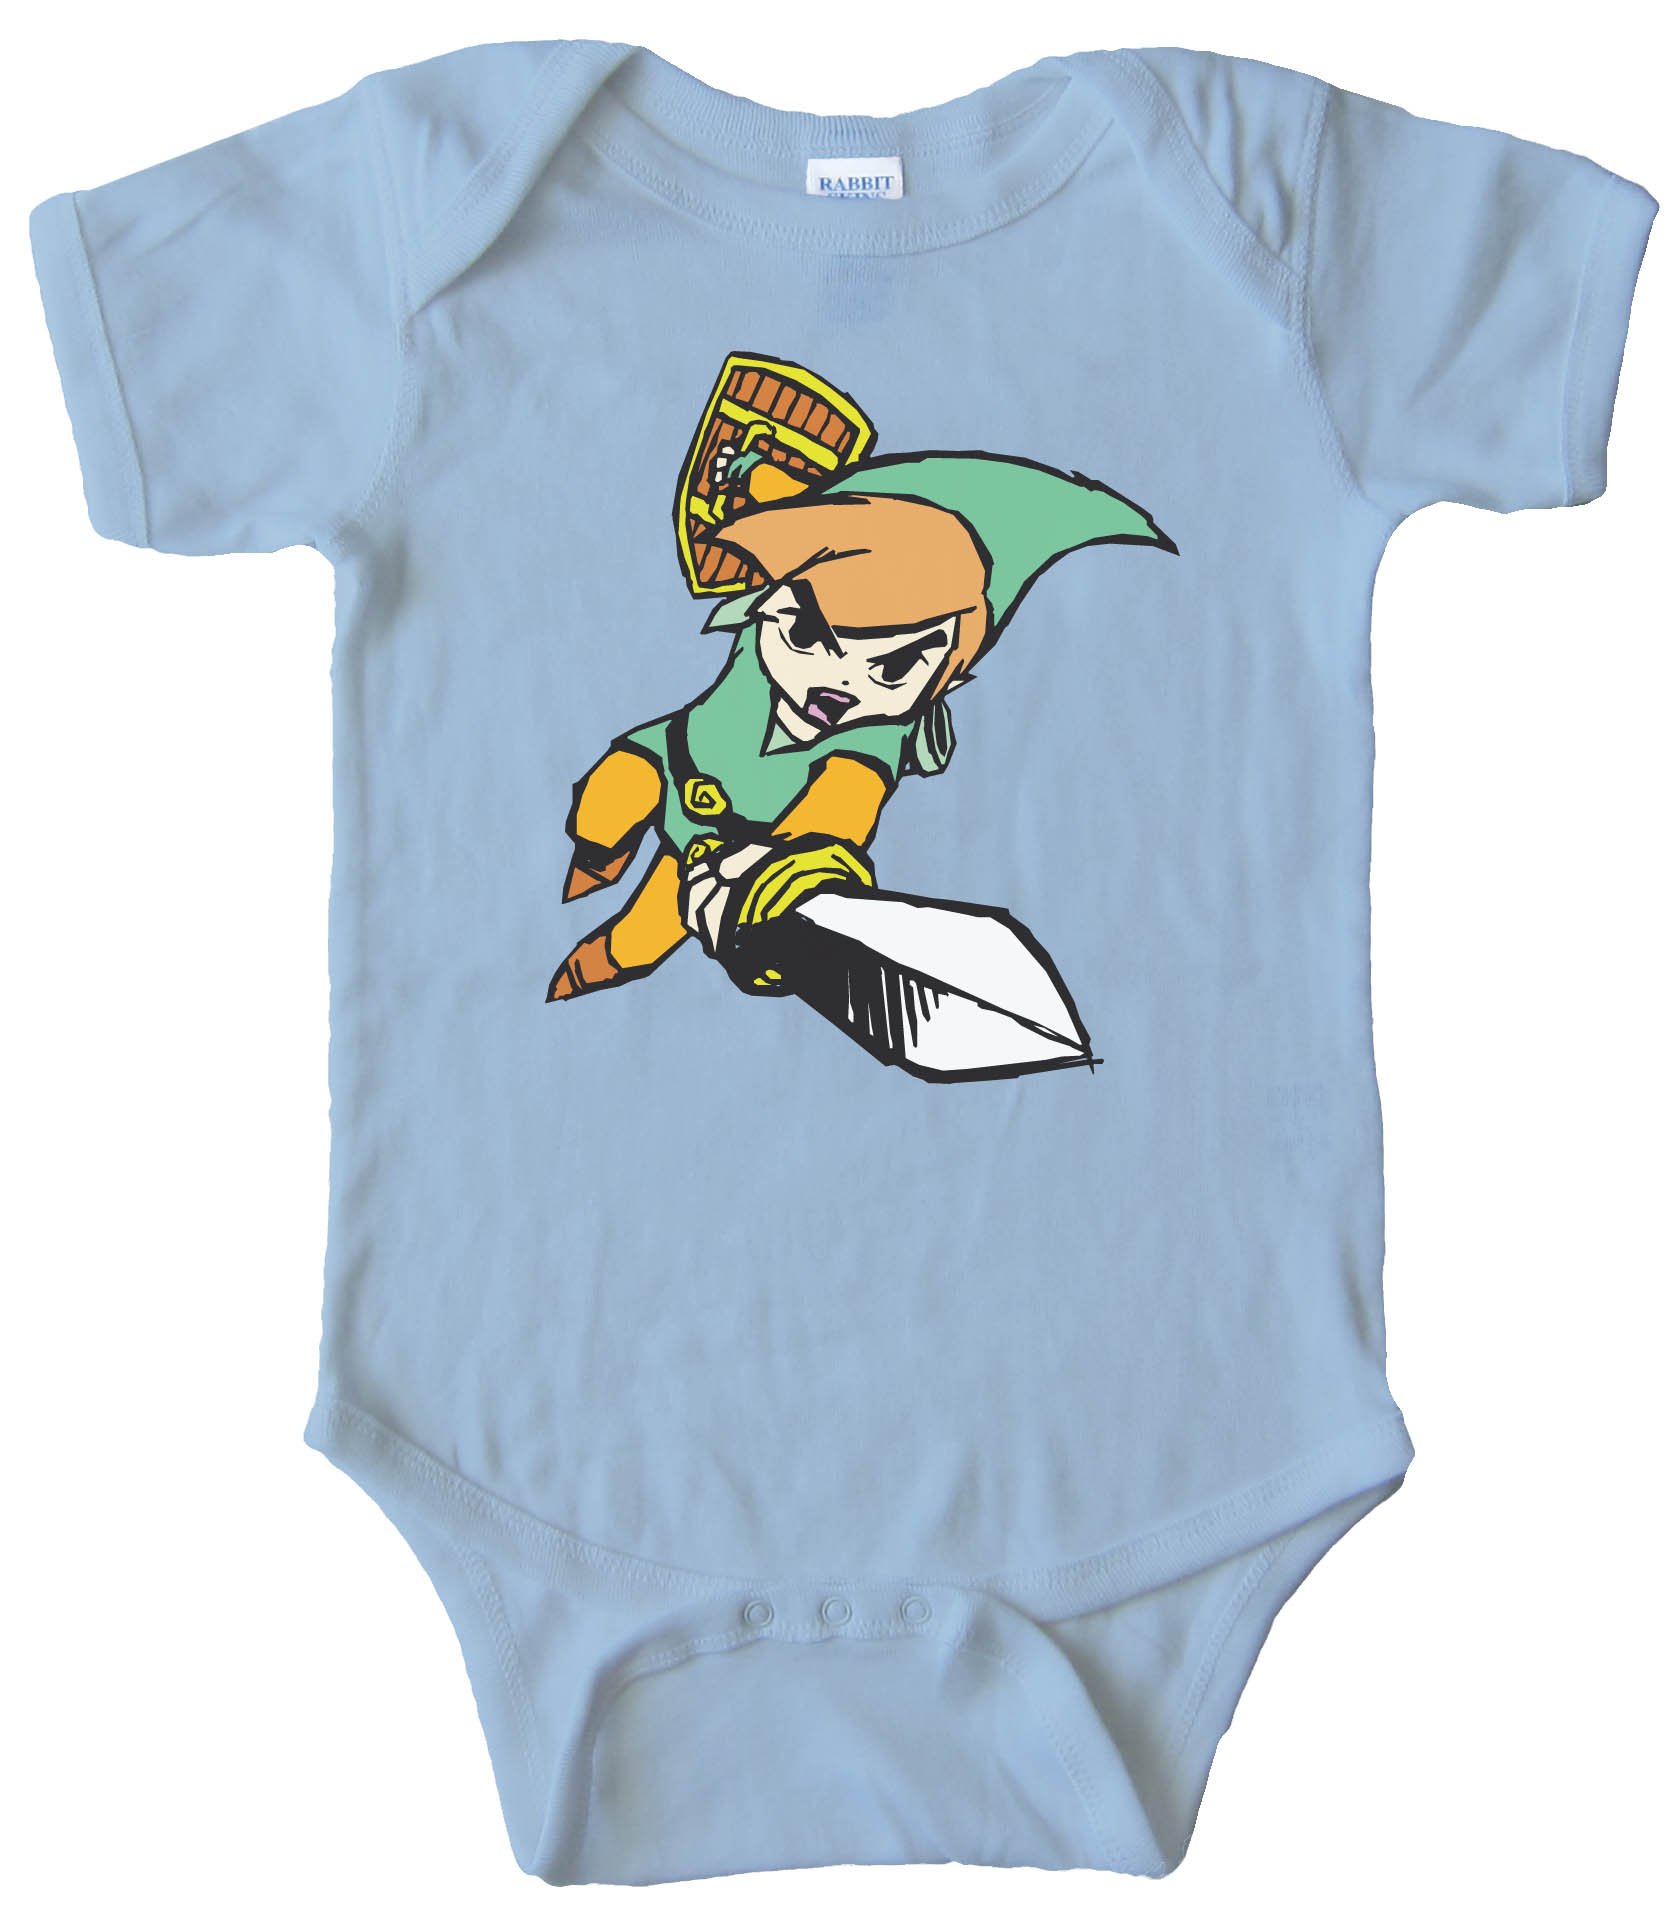 Baby Bodysuit - Link Legend Of Zelda